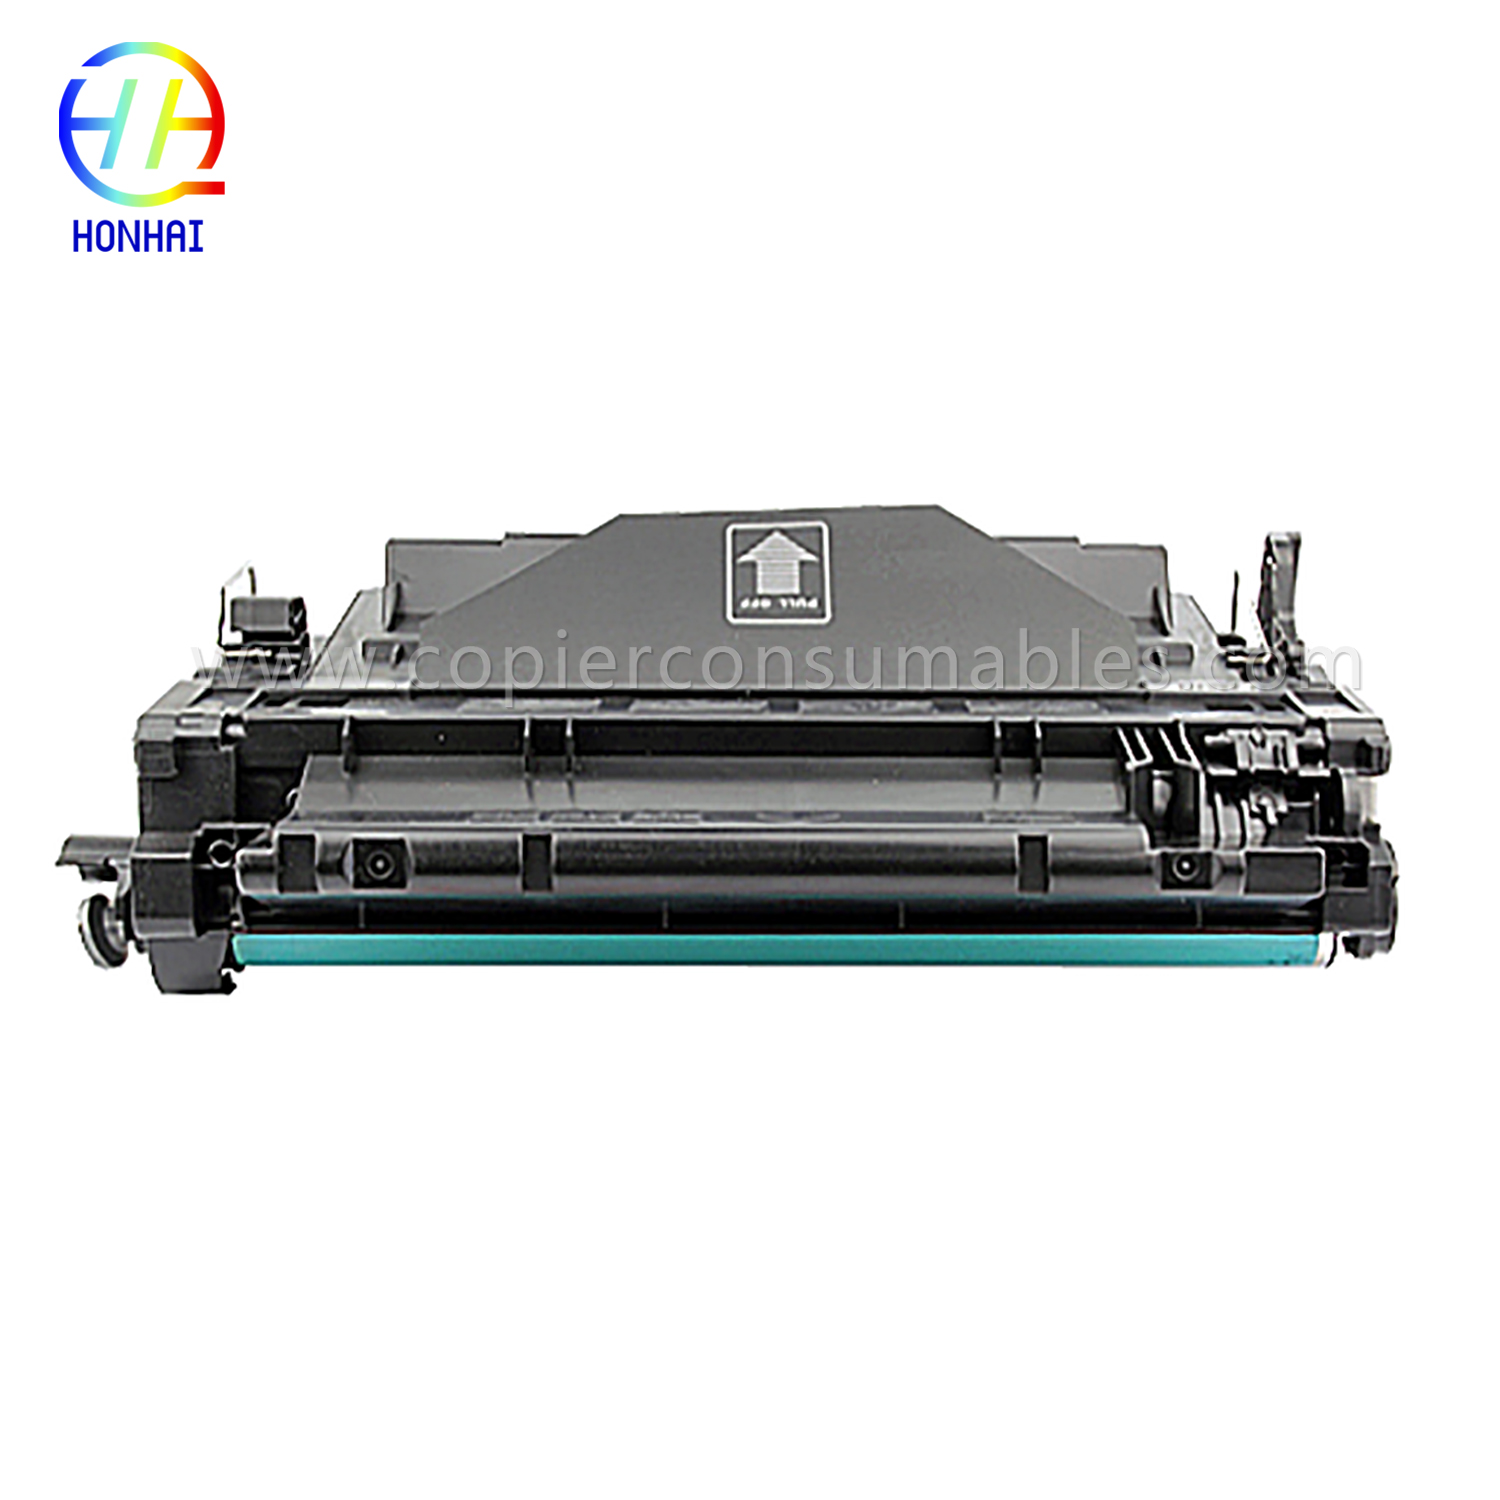 Color Toner Cartridges HP LaserJet LaserJet Pro MFP M521dn Enterprise P3015 (CE255X) -1 (1) 拷贝